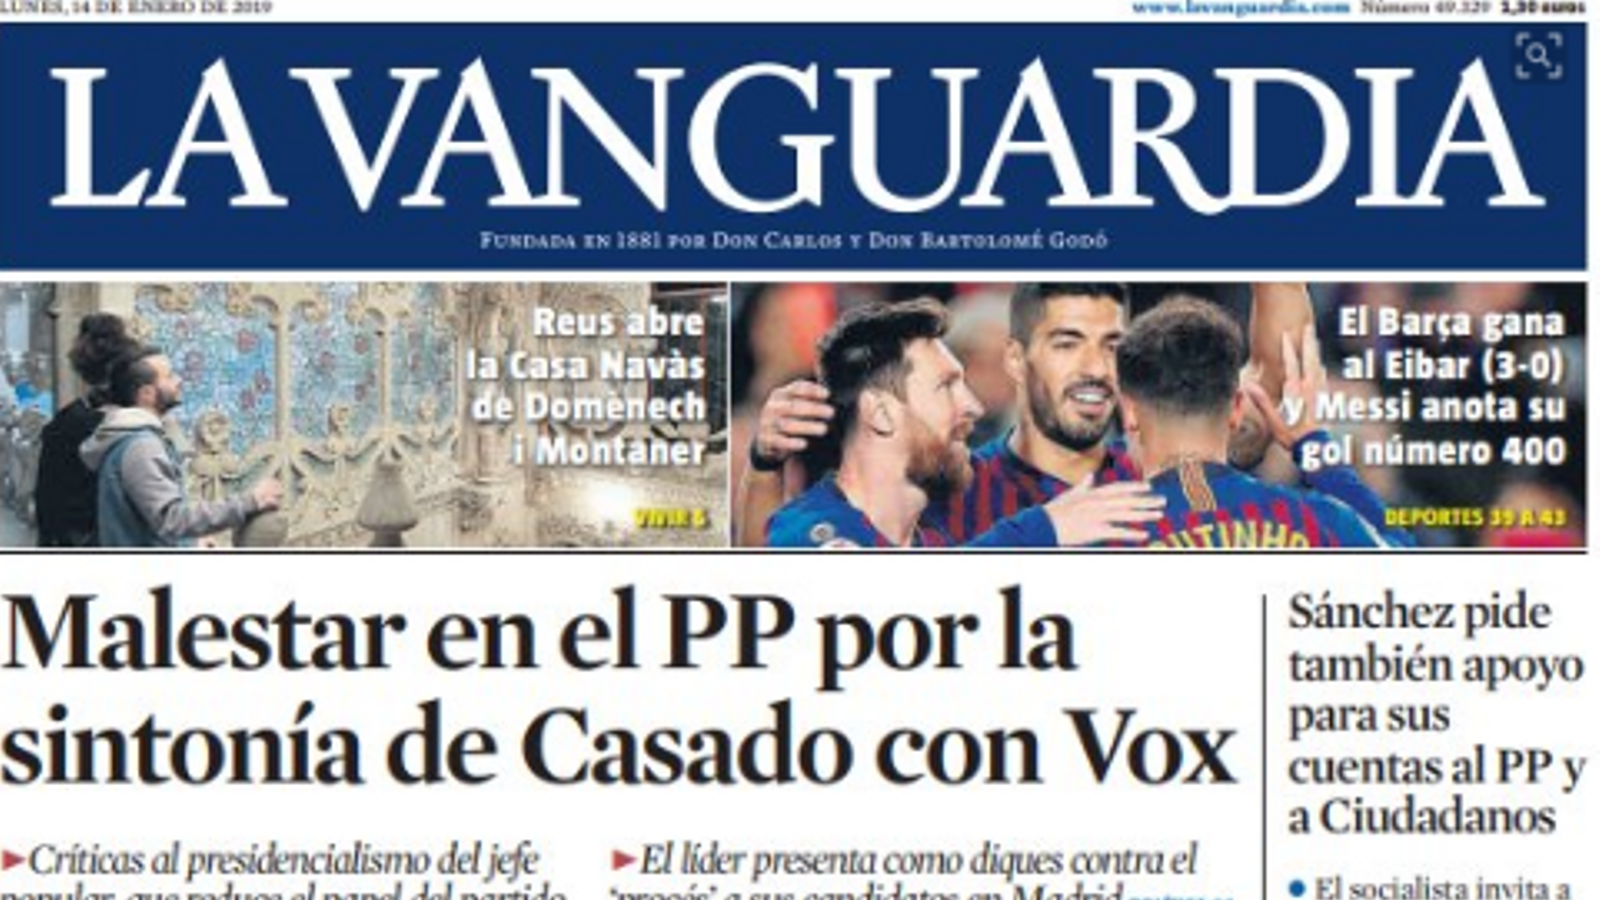 "Malestar al PP per la sintonia de Casado amb Vox", a la portada de 'La Vanguardia'